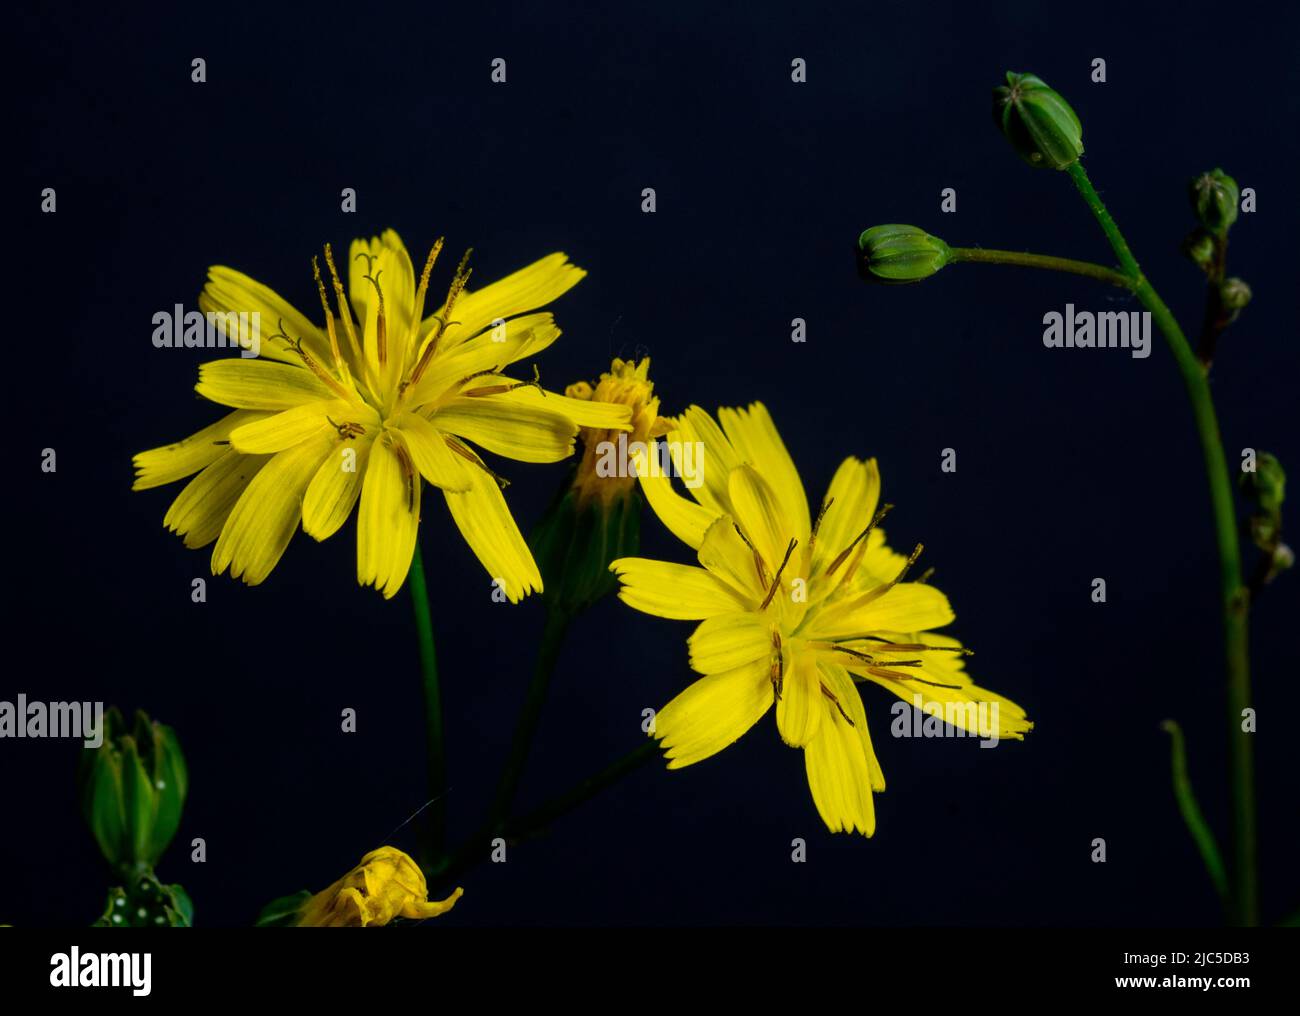 Nipplewort (Lapsana communis), close-up with black background. Stock Photo